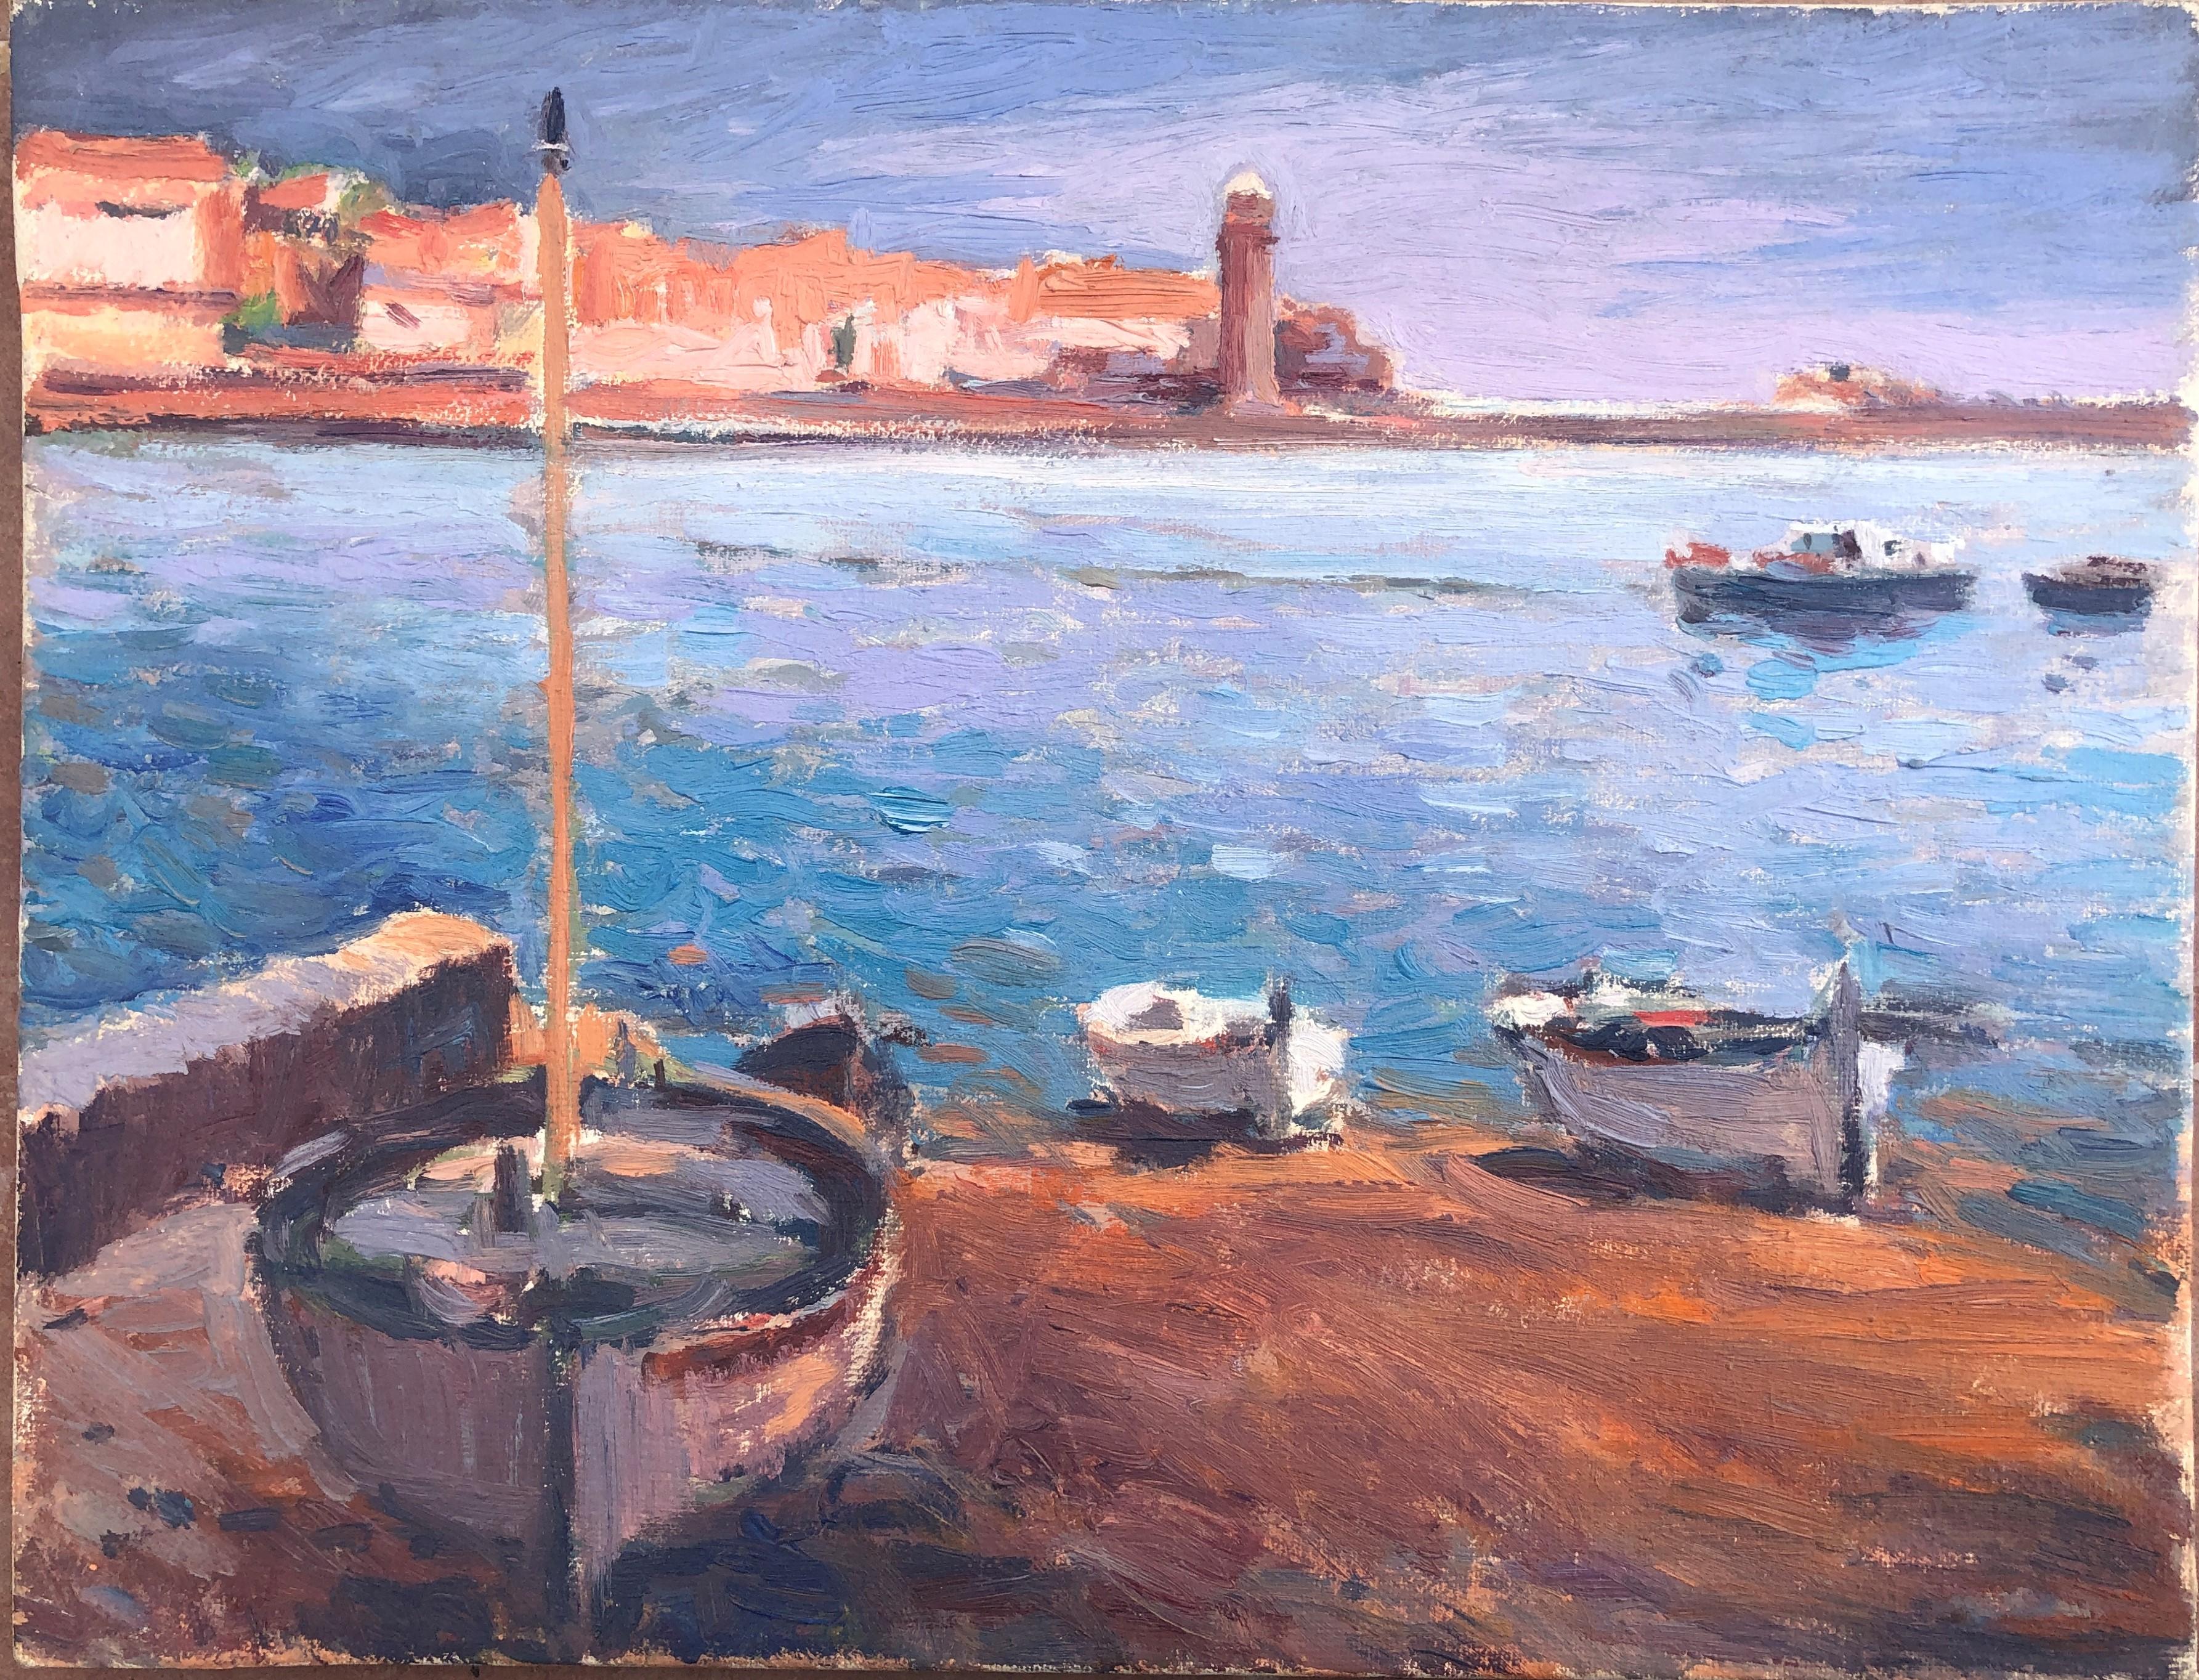 Landscape Painting Josep Marfa Guarro - Peinture à l'huile sur toile - Paysage marin de la côte catalane